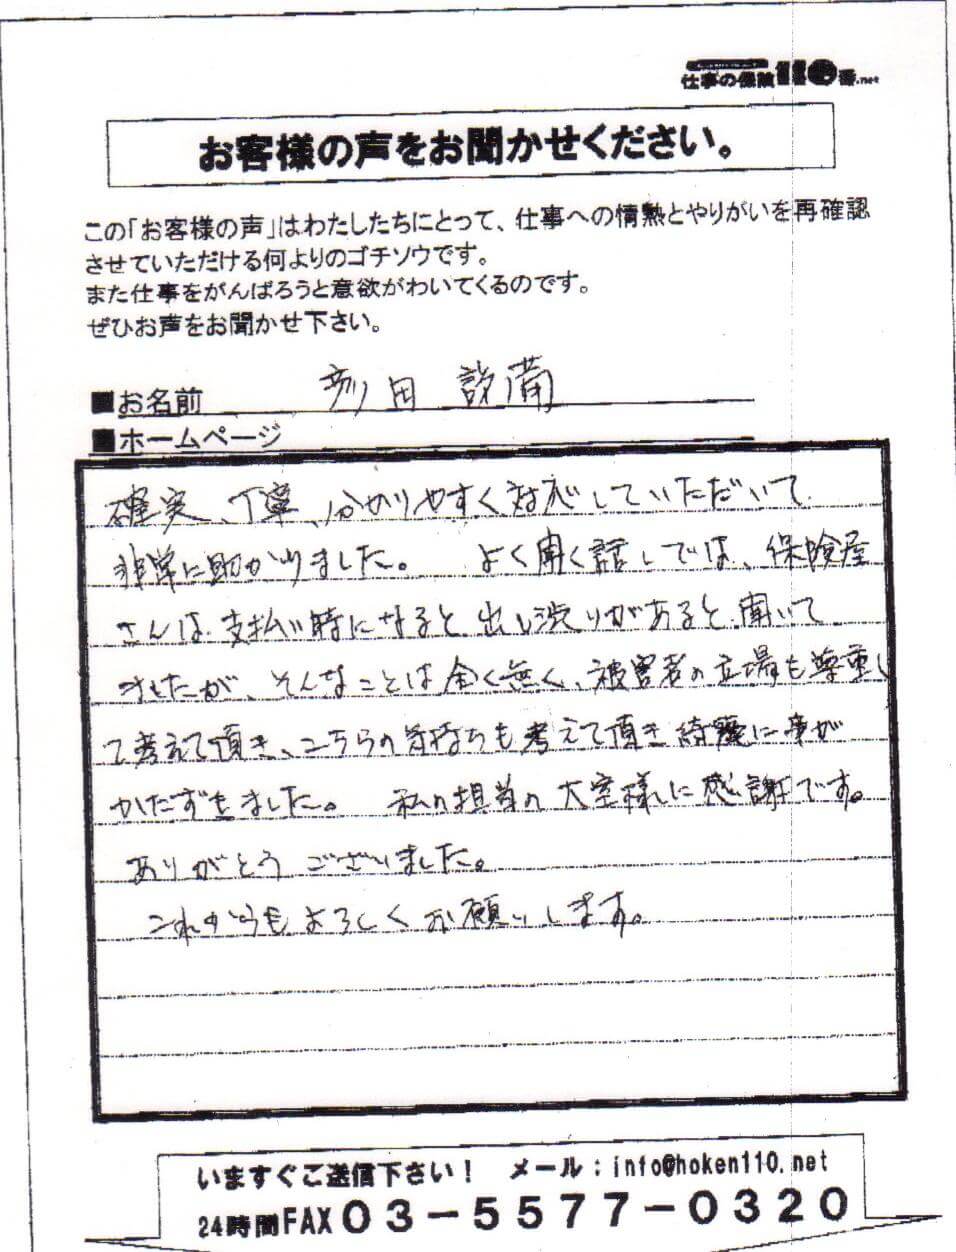 2009-01-19 hikotasetubi.jpg